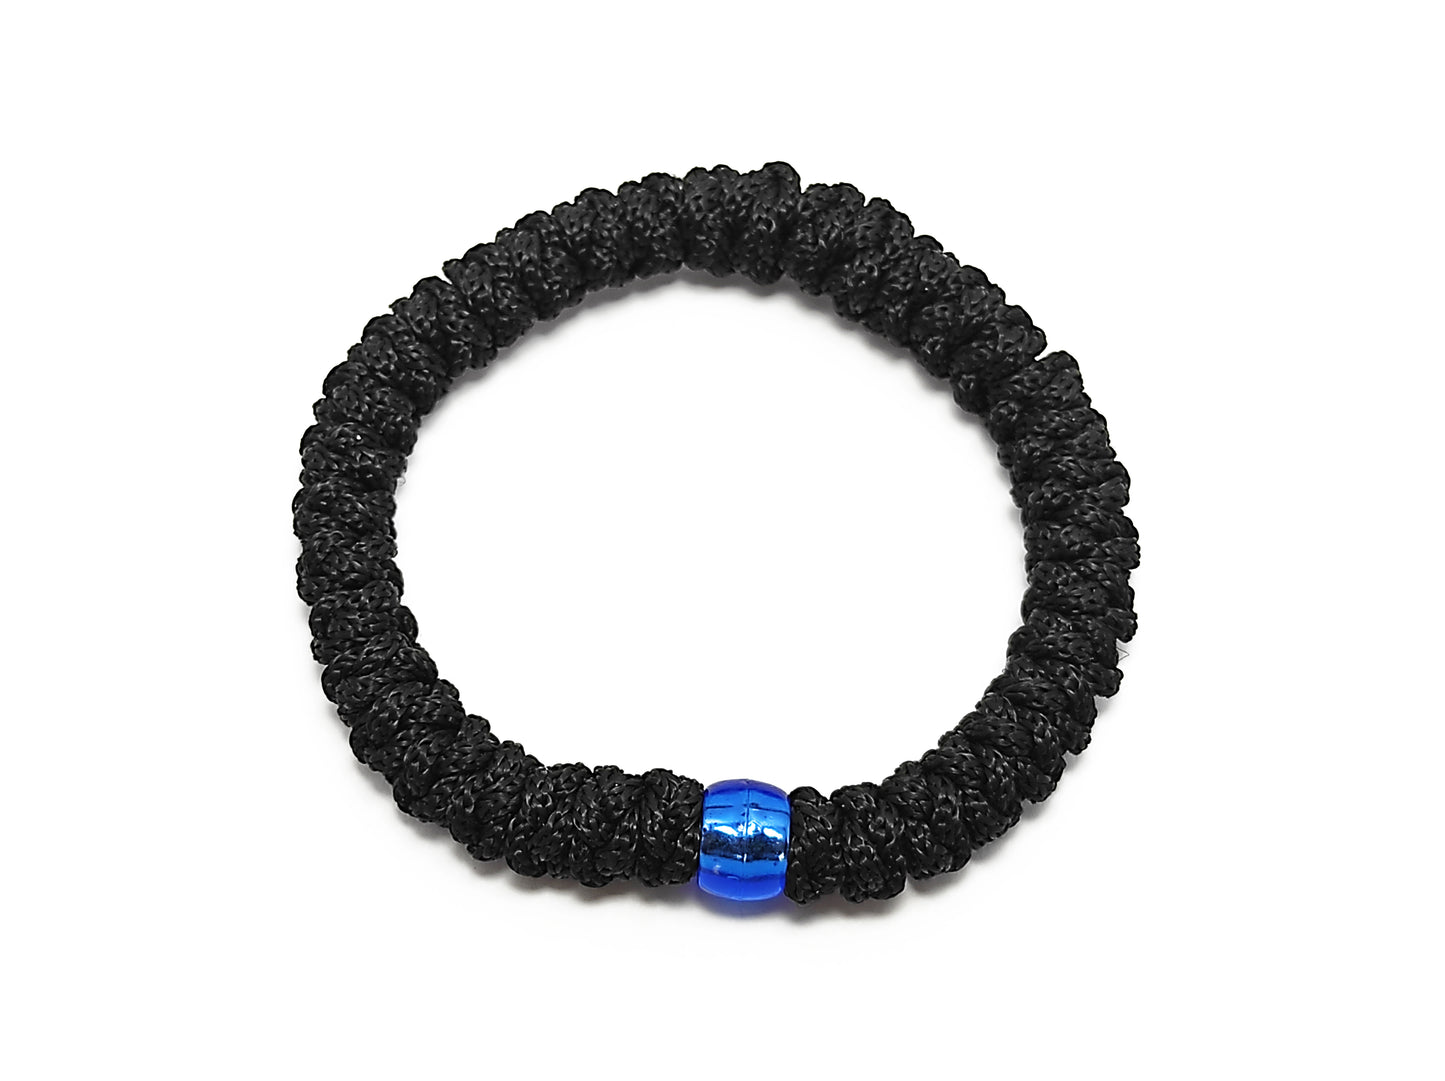 Αγιορείτικο Κομποσχοίνι 33αρι με Λάστιχο σε Μαύρο Χρώμα και Μπλε Χάντρα [Ζ04]